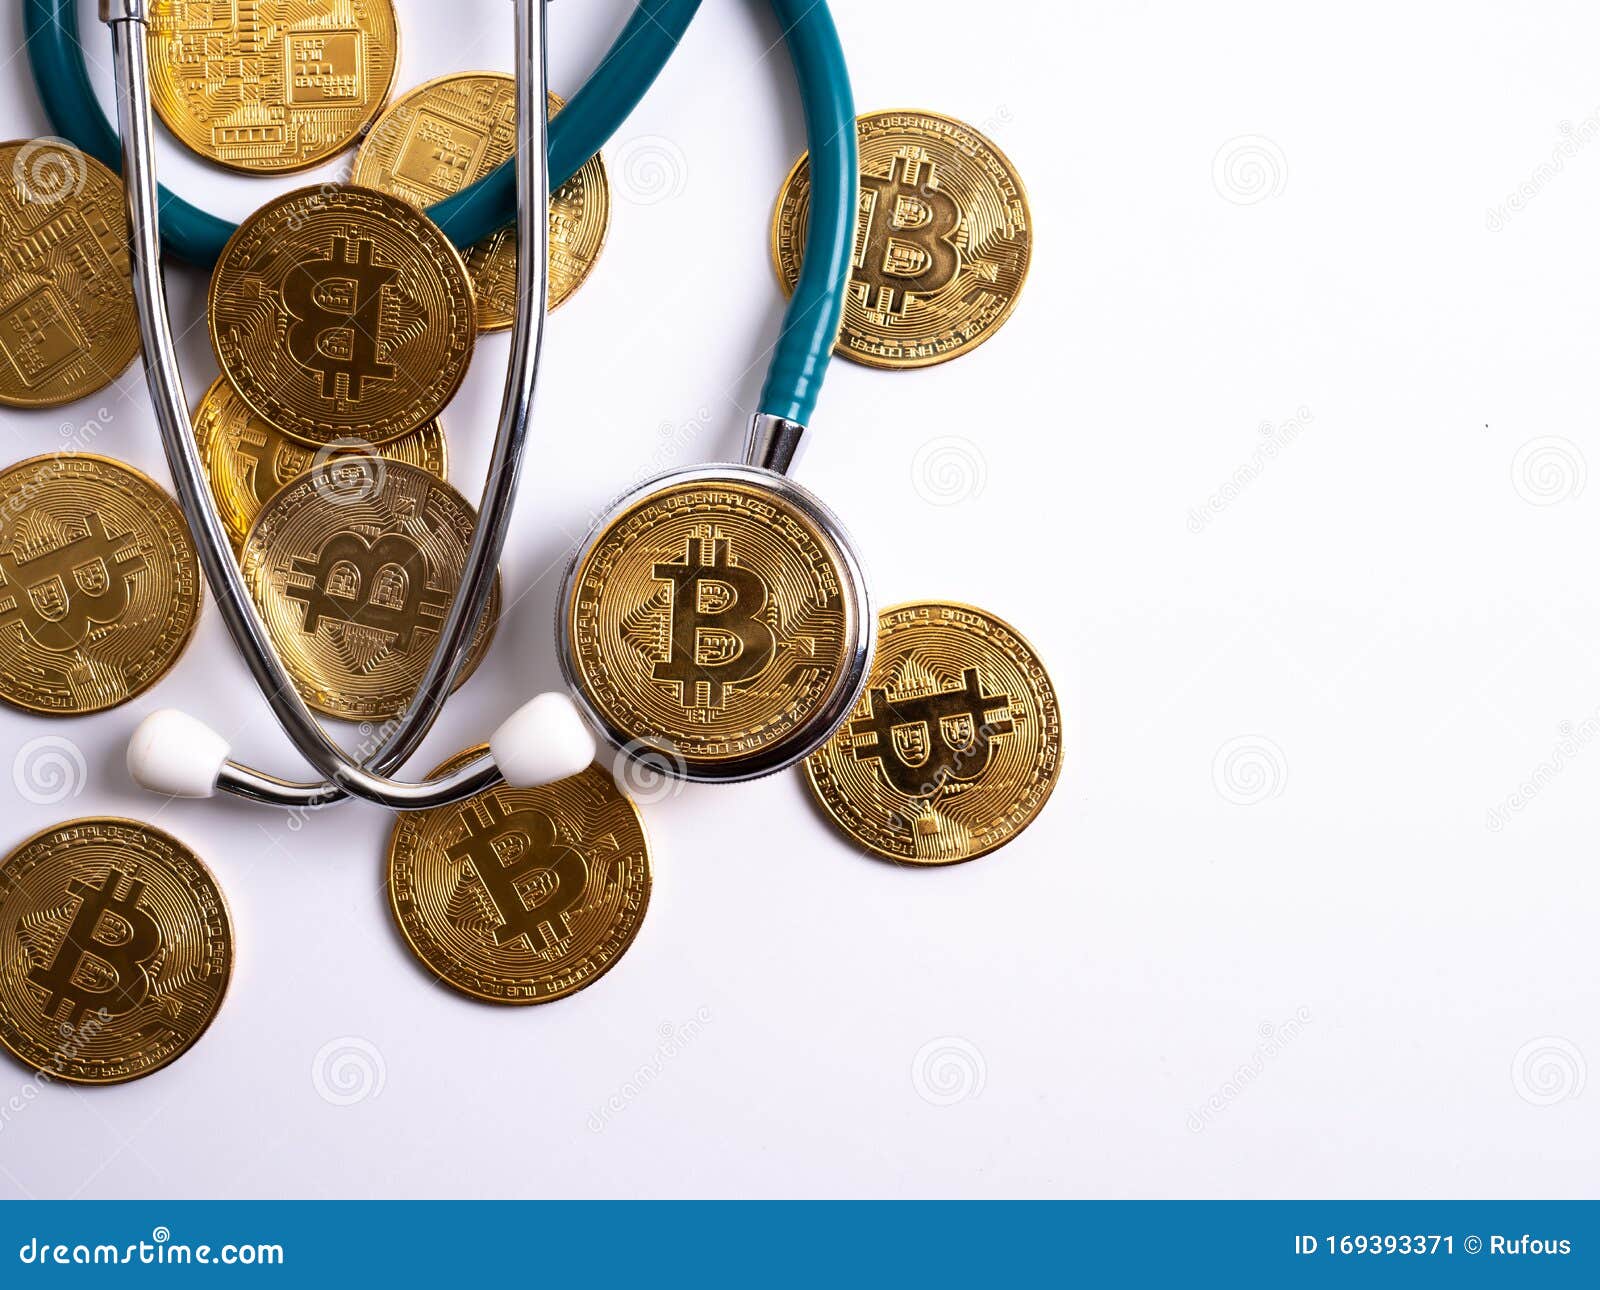 healthcare crypto coins